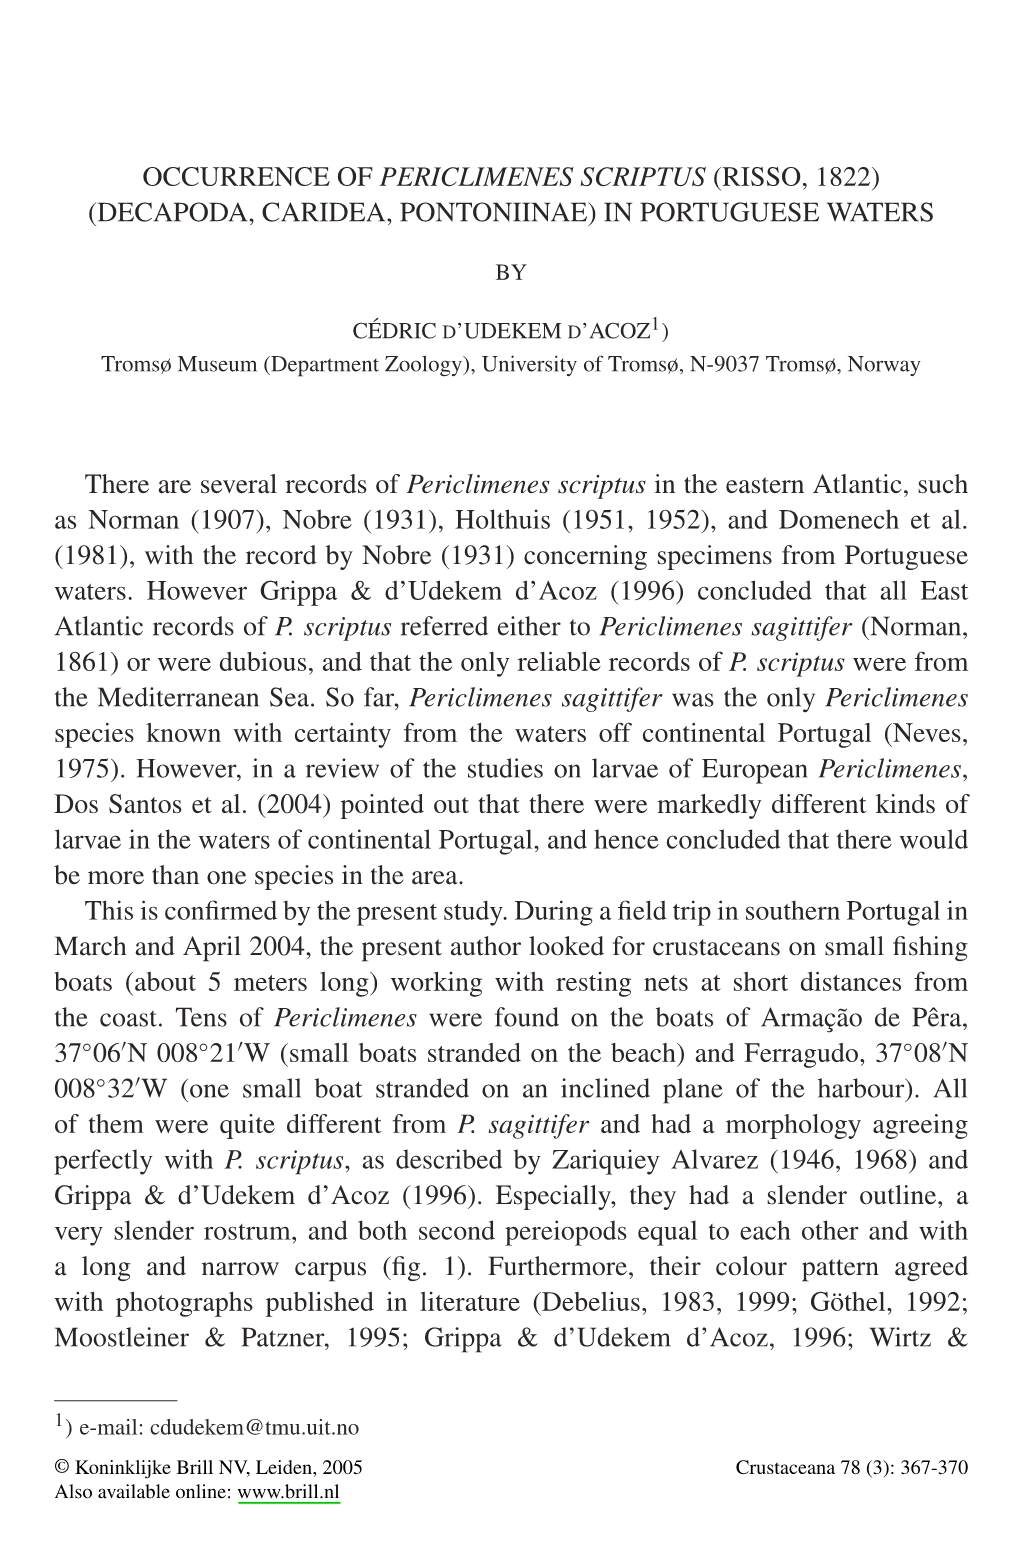 OCCURRENCE of PERICLIMENES SCRIPTUS (RISSO, 1822) (DECAPODA, CARIDEA, PONTONIINAE) in PORTUGUESE WATERS There Are Several Record